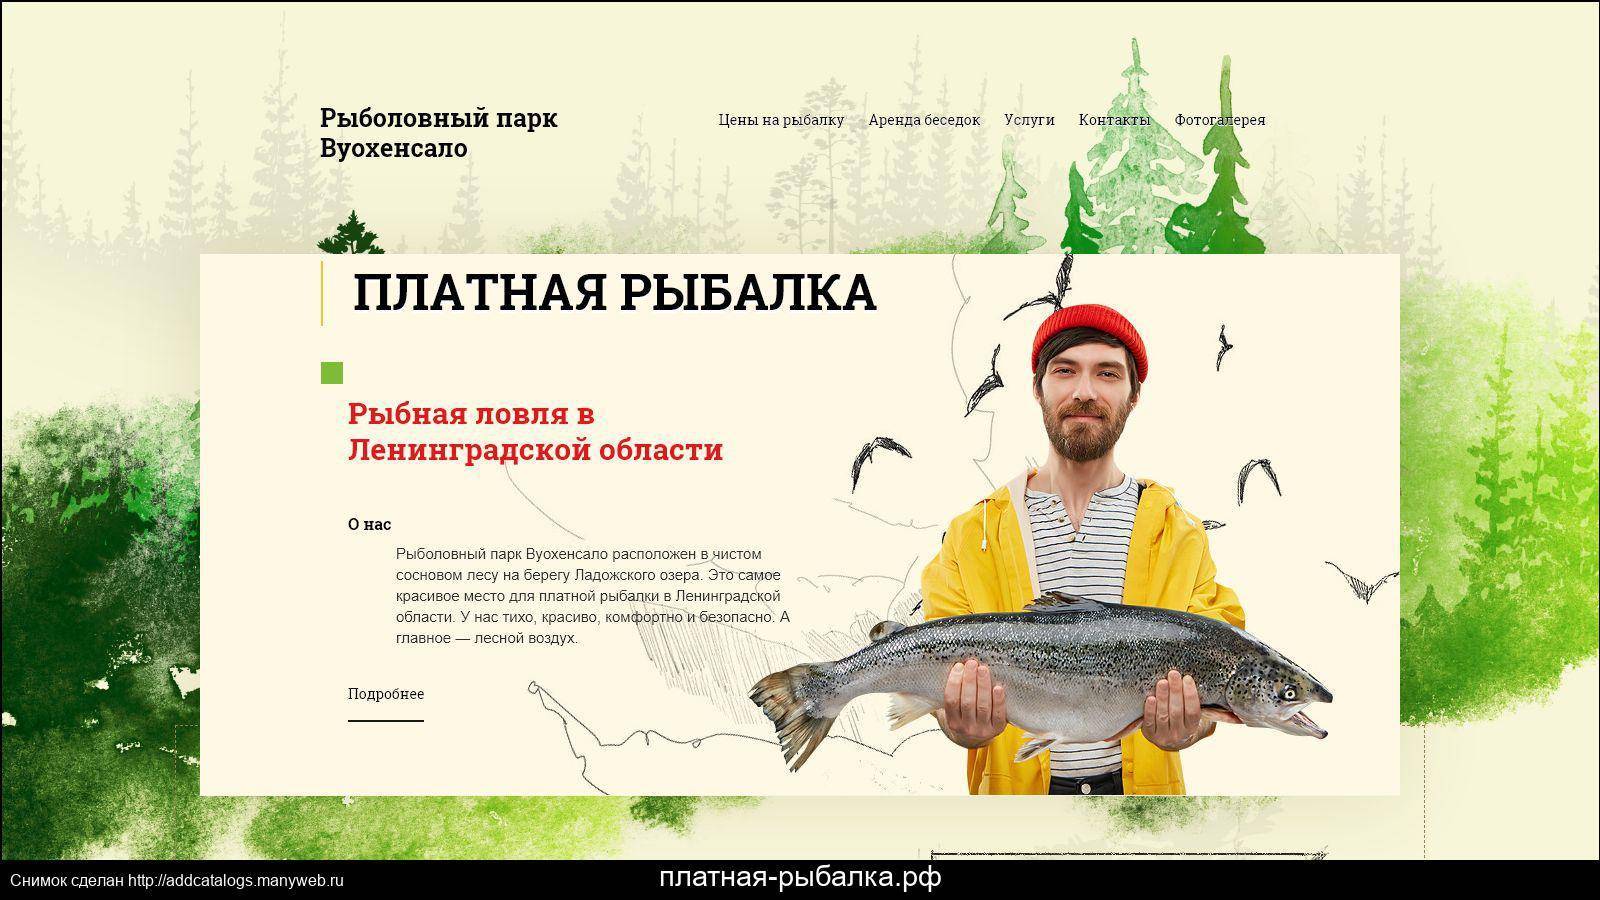 Рыбалка в самаре и самарской области: платные пруды и бесплатные рыбные места